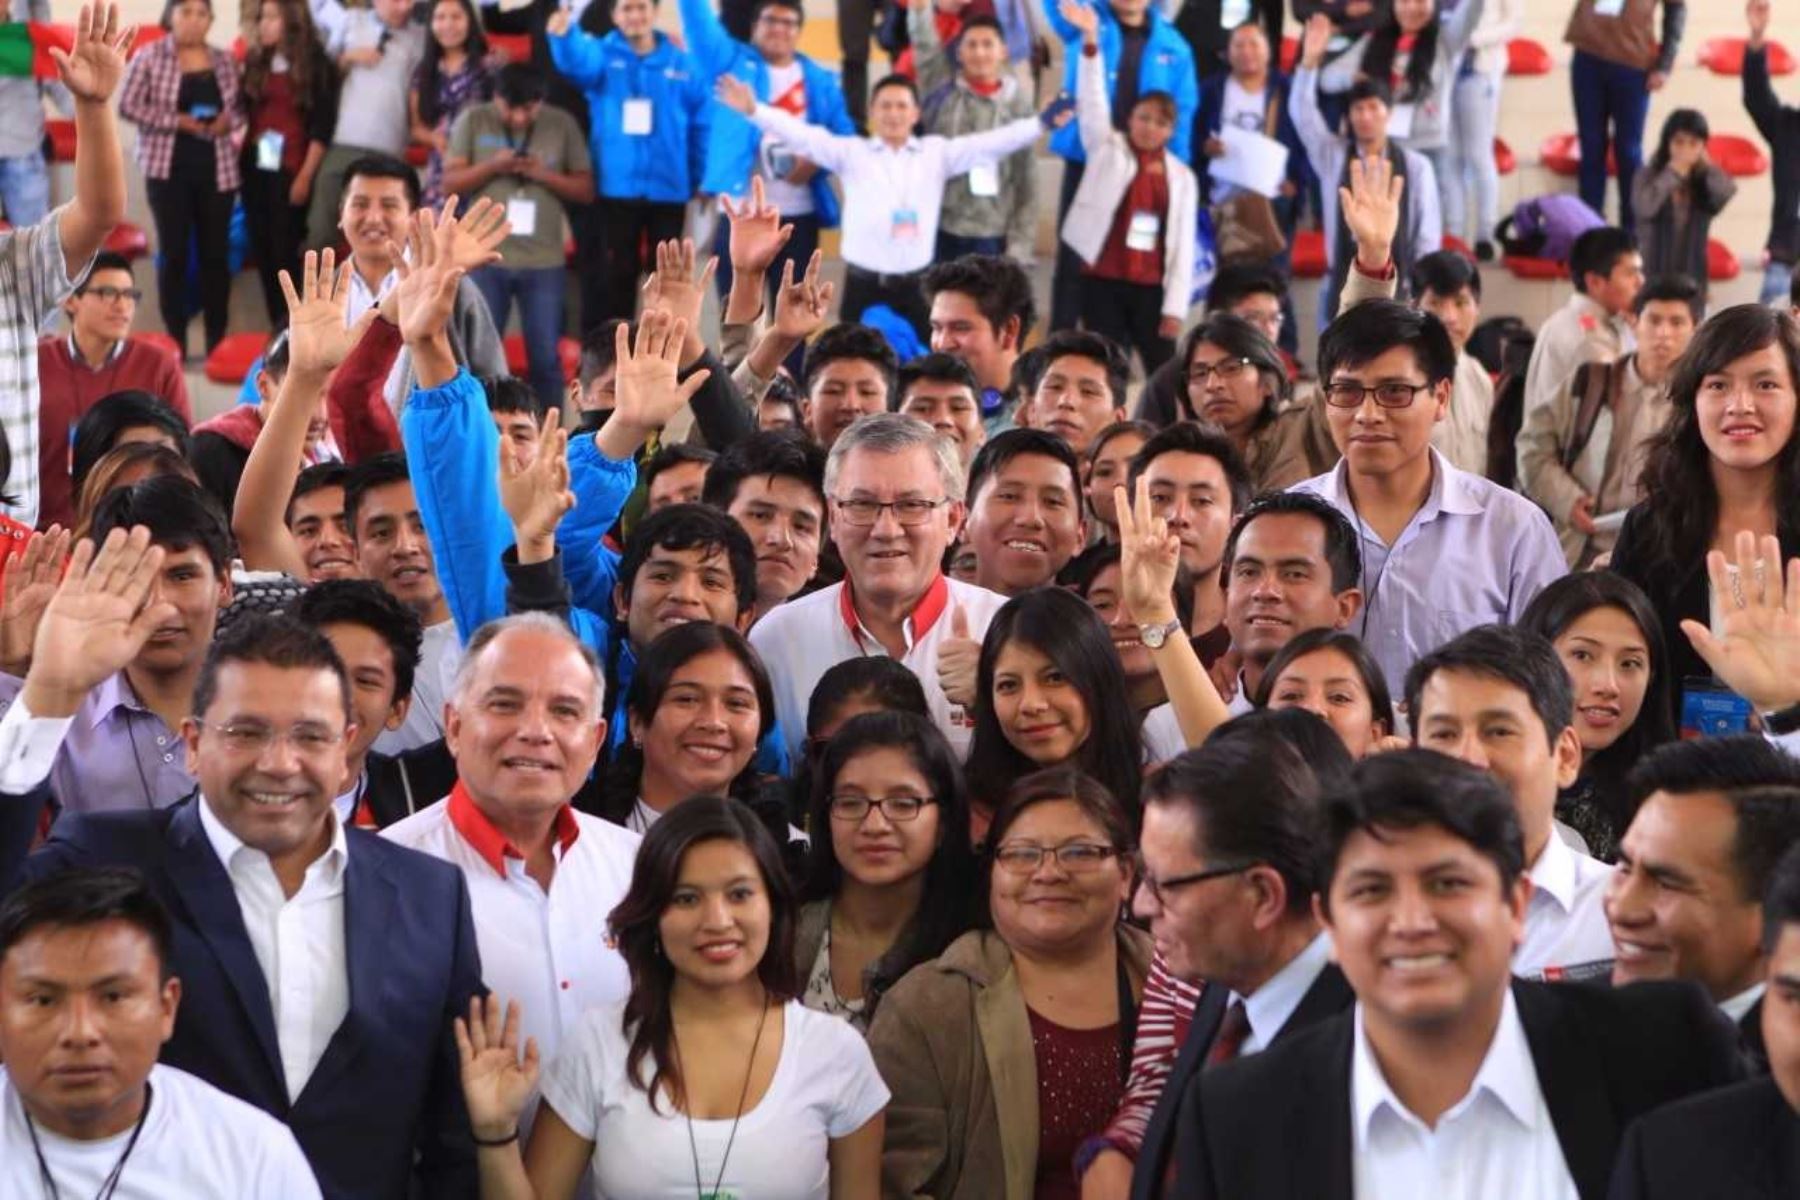 En Puno, el ministro Grados participó en el VII Congreso Nacional de Juventudes, donde dialogó con alrededor de 200 jóvenes de diversas regiones sobre la problemática de empleabilidad juvenil y previsión social.